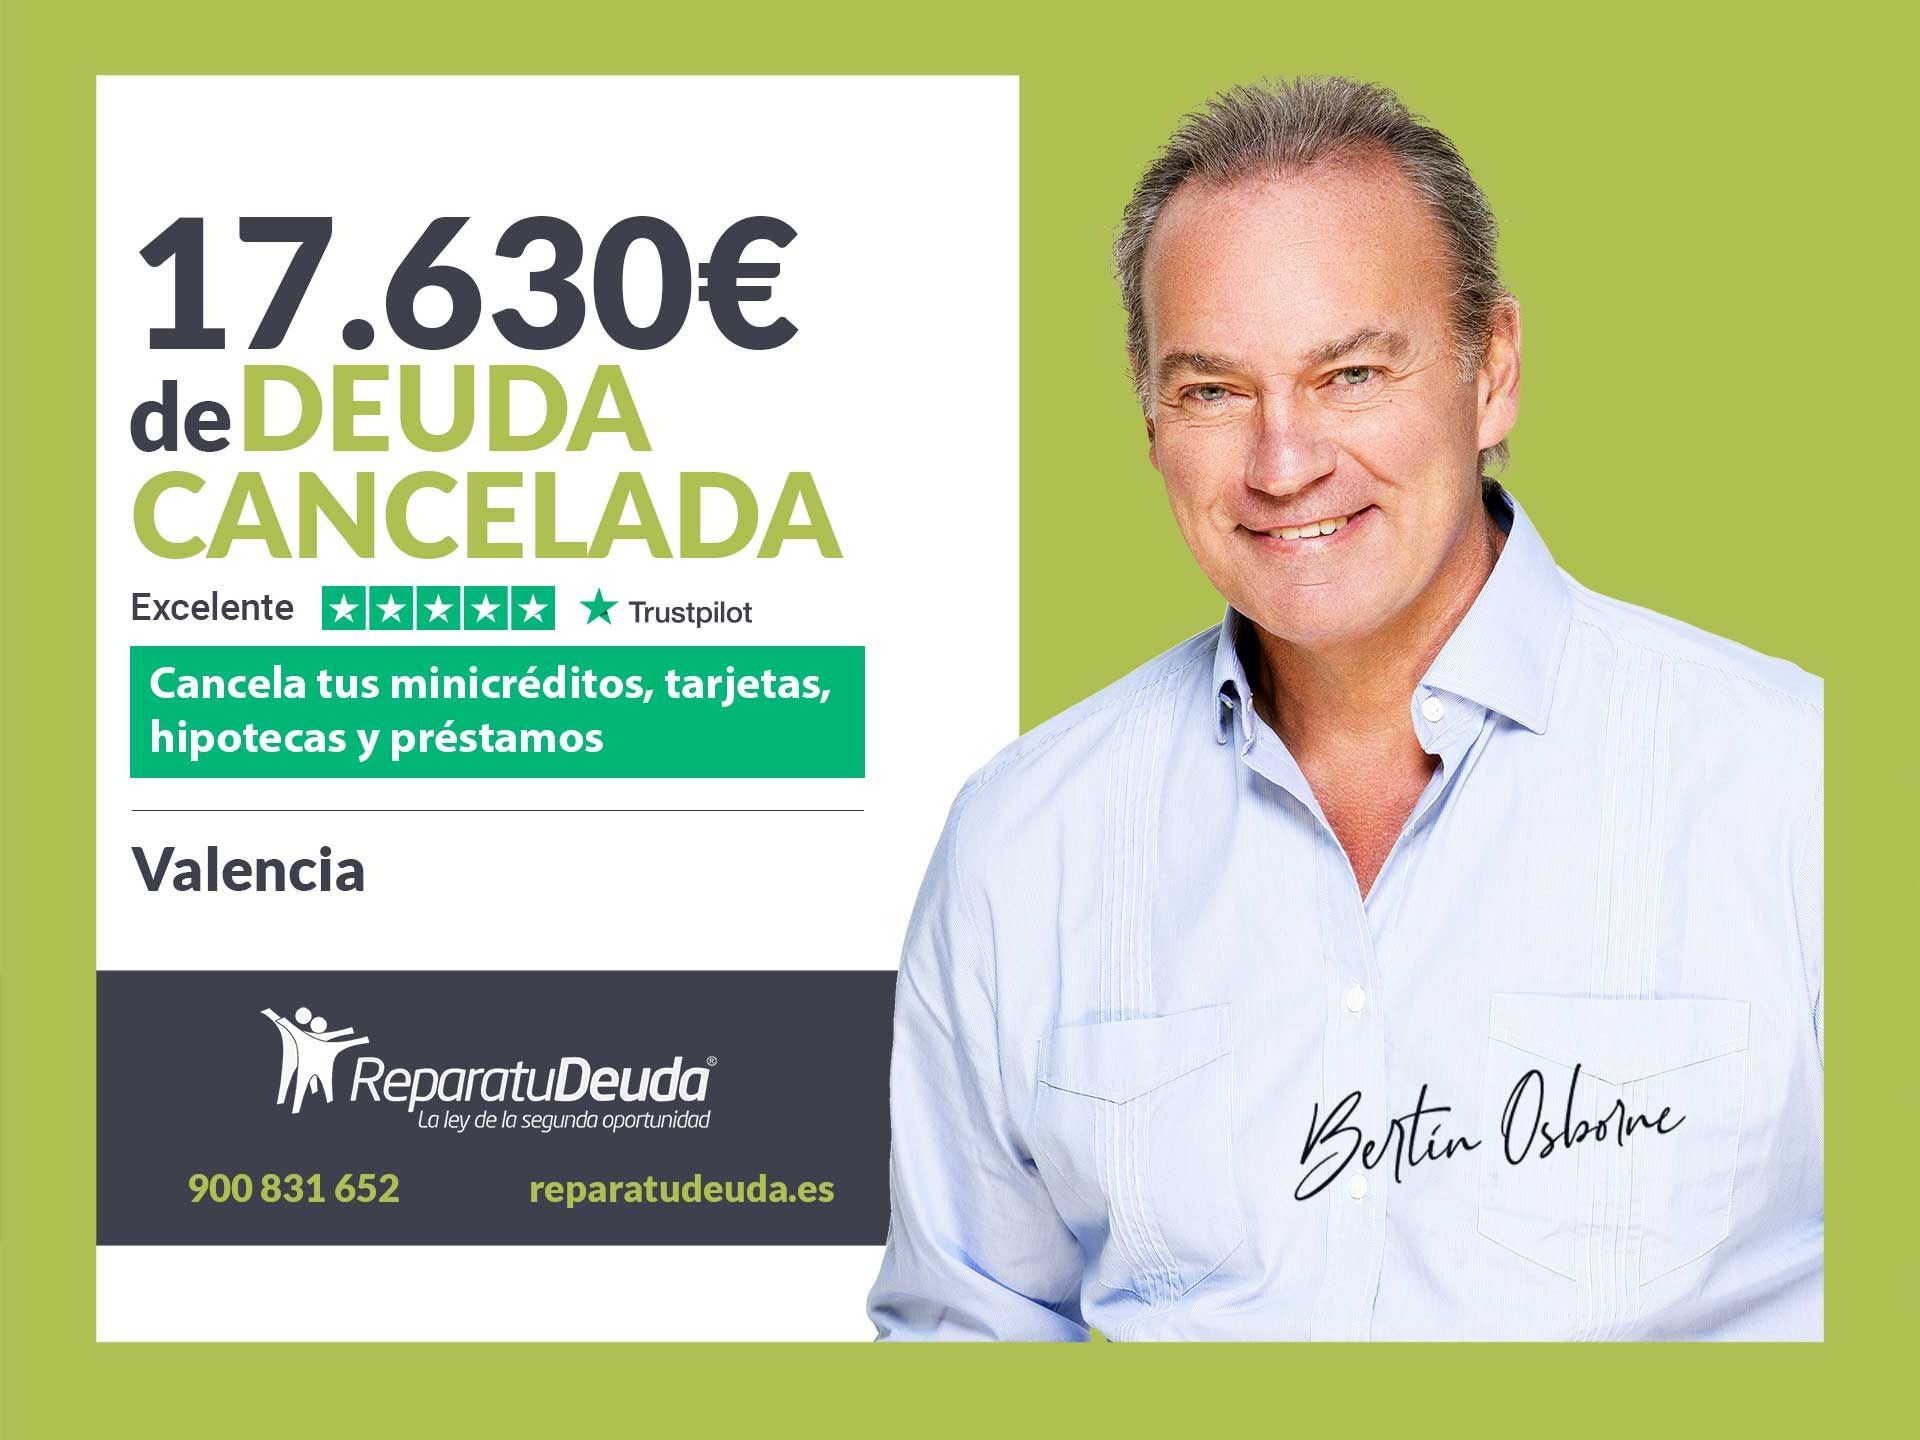 Repara tu Deuda Abogados cancela 17.630? en Valencia con la Ley de Segunda Oportunidad